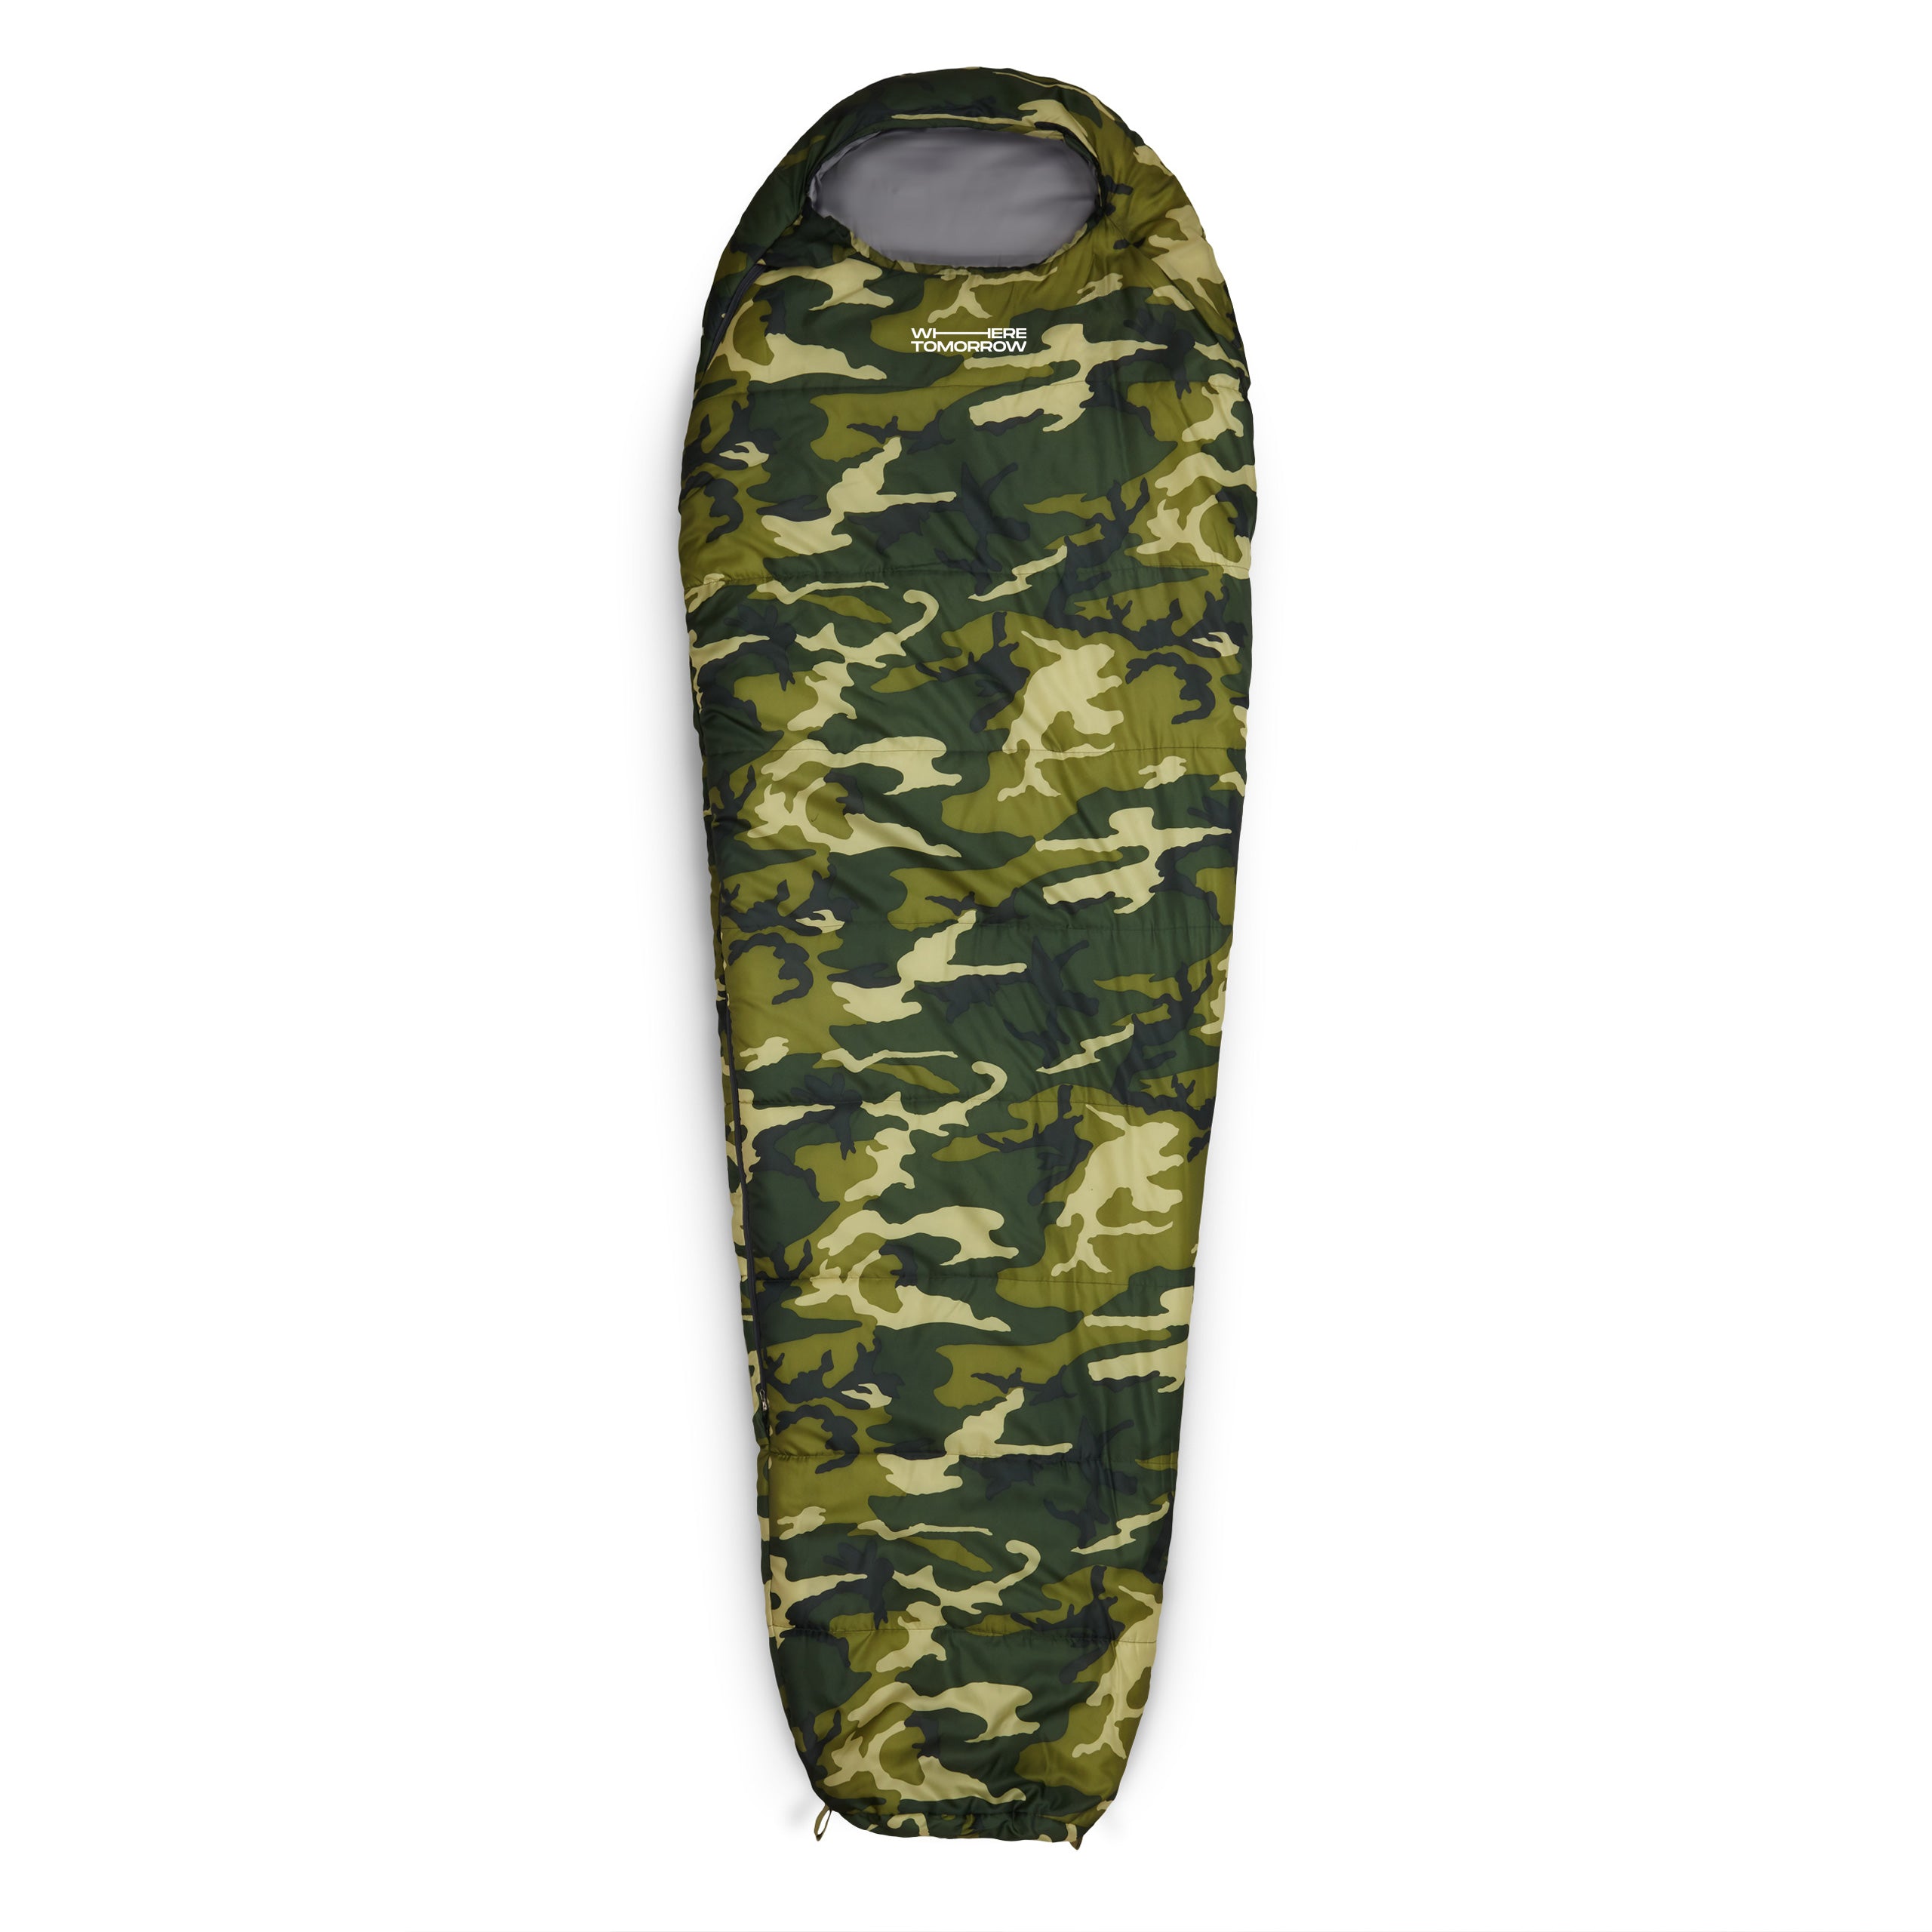 Camping Schlafsack Classic - Mumienschlafsack mit Tasche - 230 x 80 x 55 cm - Camouflage Grün